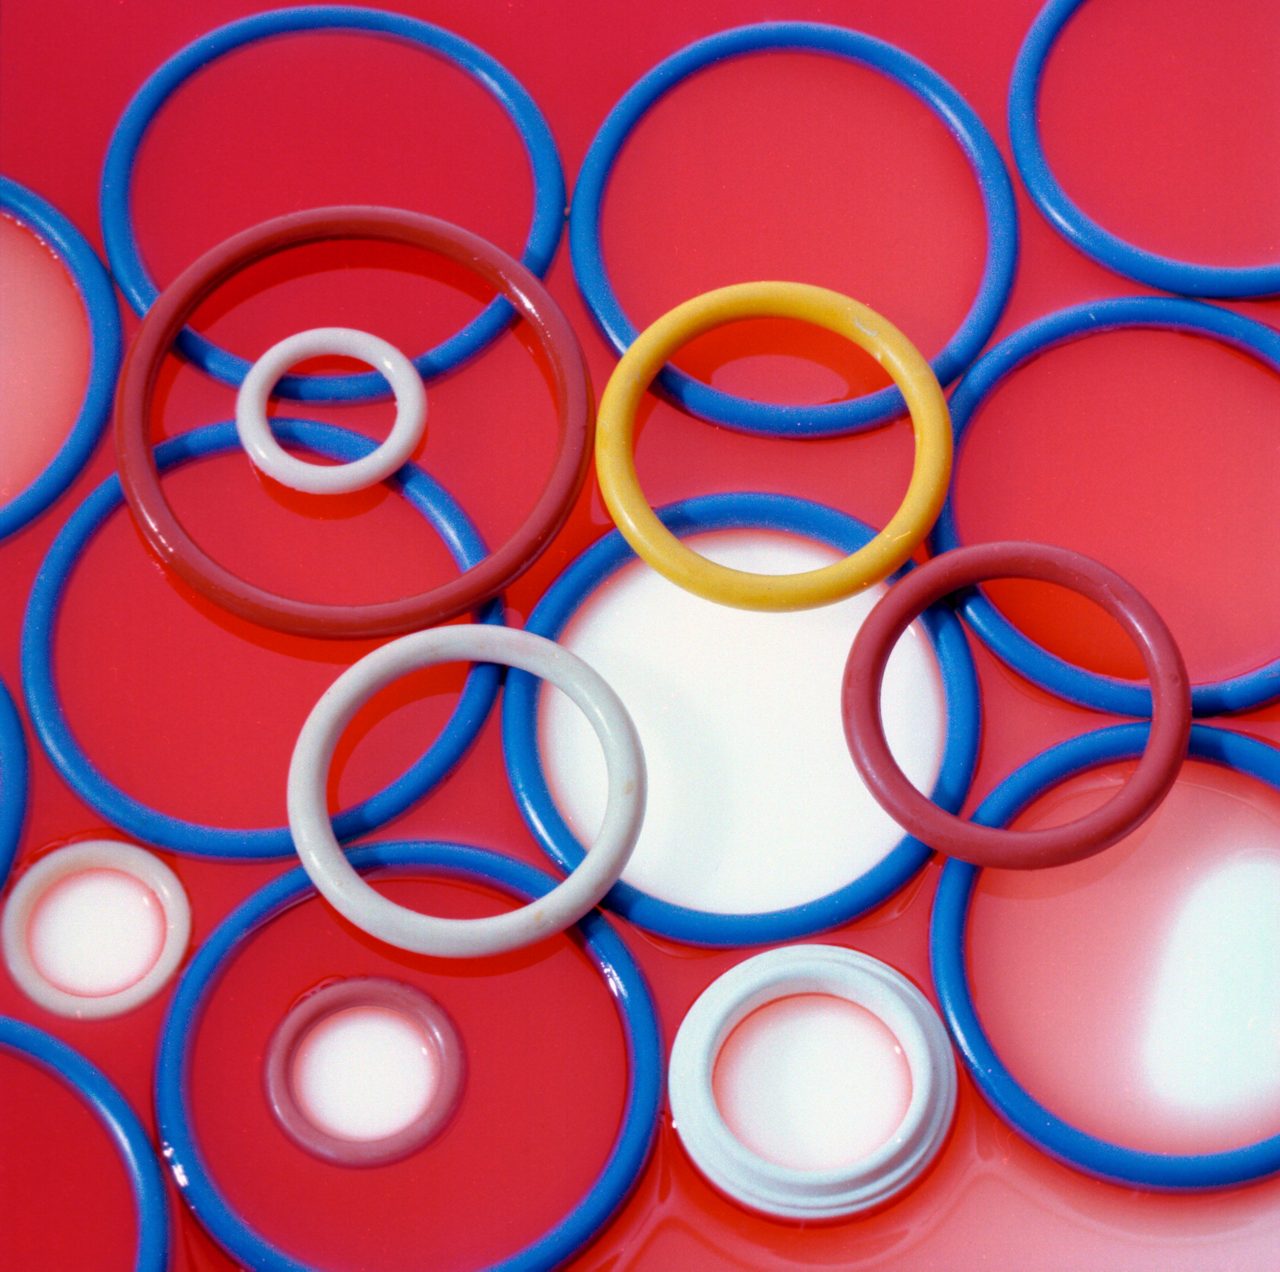 Vários O-rings coloridos moldados a partir de borracha de fluorossilicone.